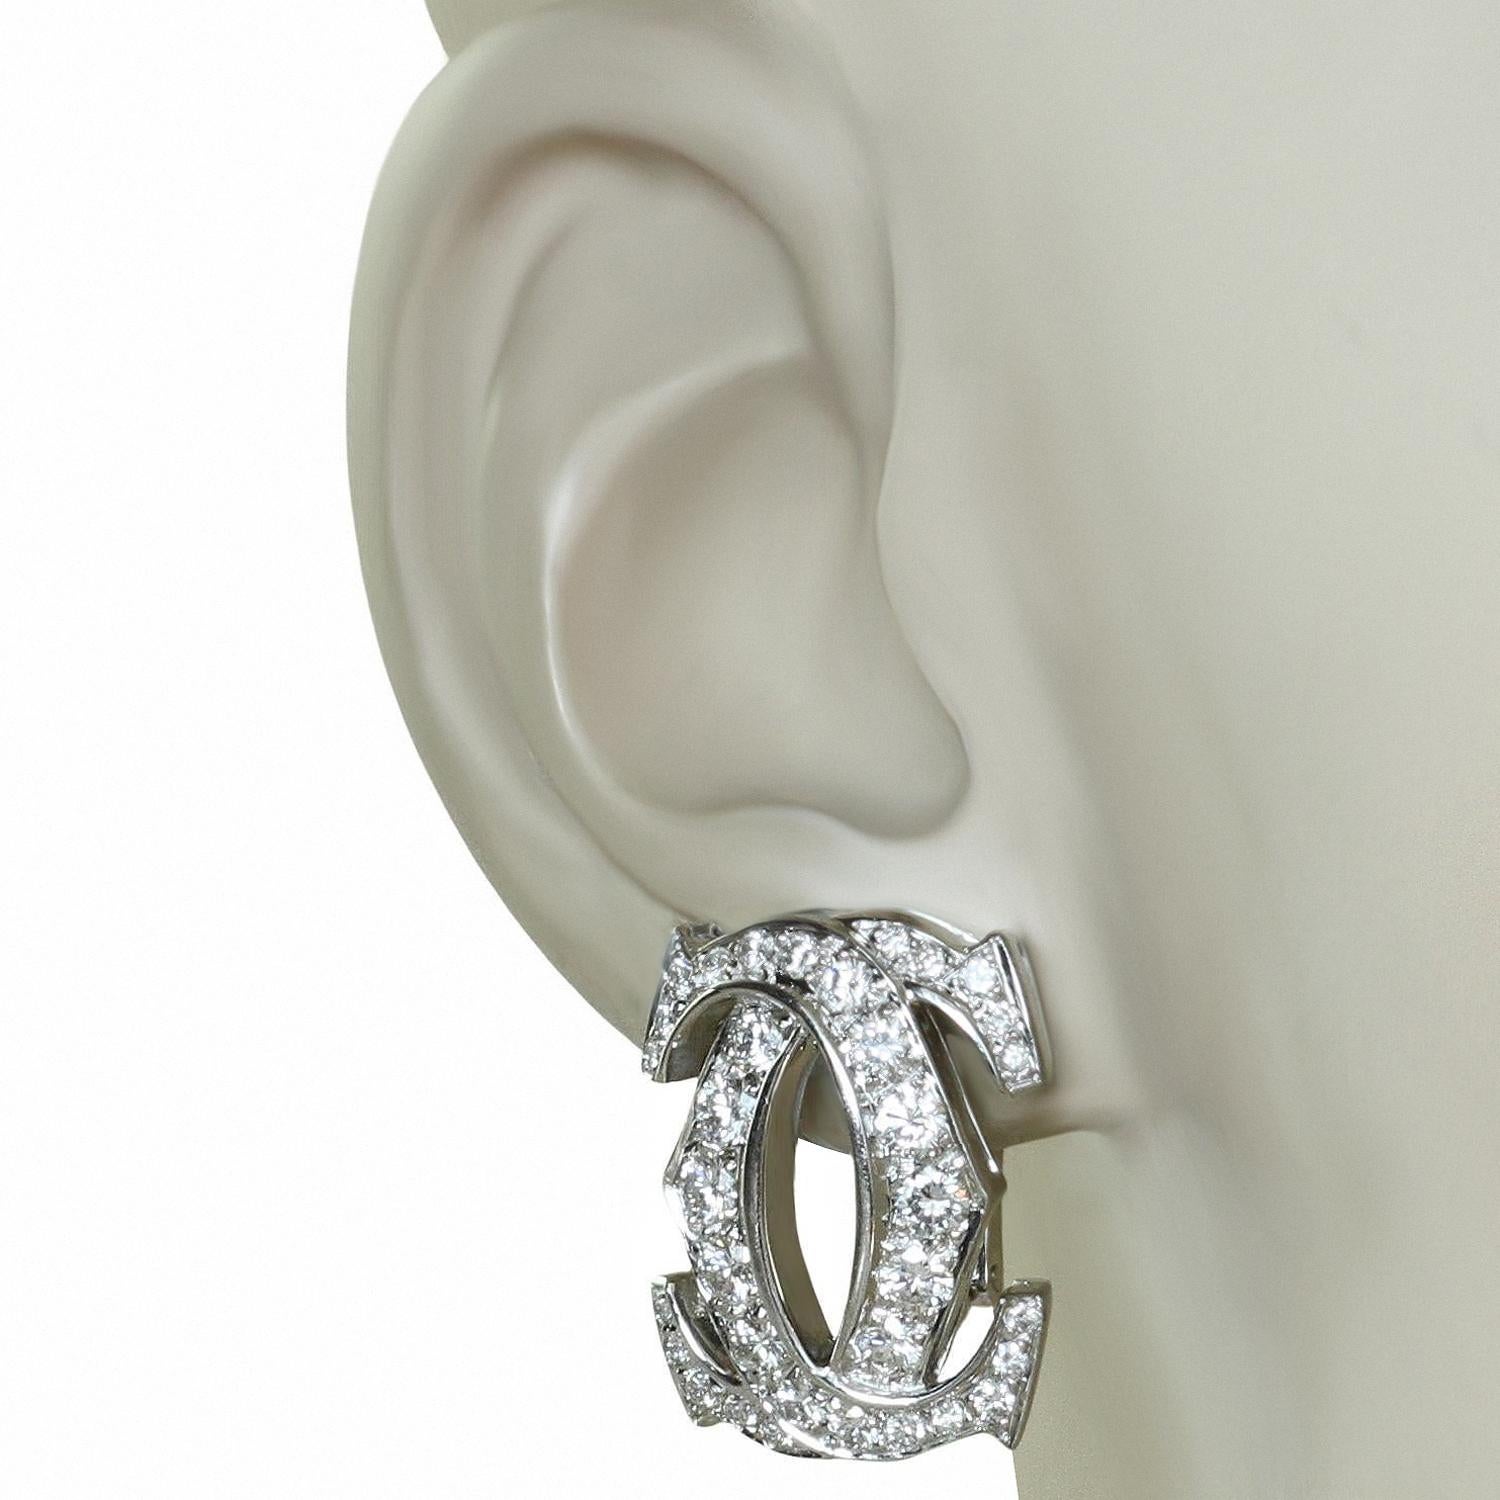 double c earrings